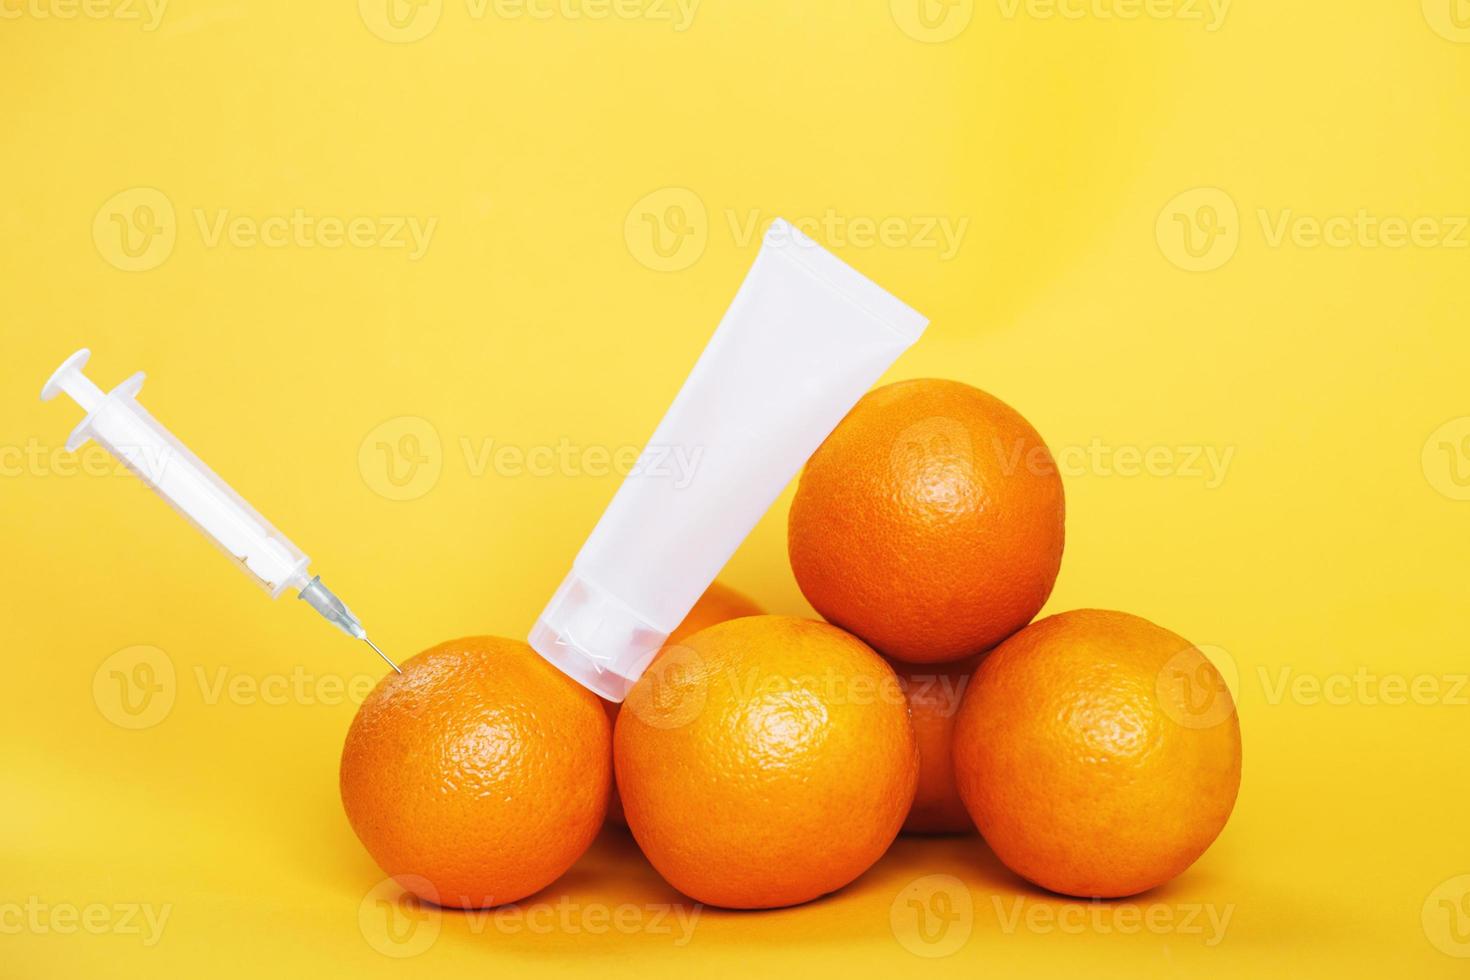 frutas laranja com seringa extraindo líquido com vitamina c e tubo de creme vazio. conceito de cosméticos naturais antienvelhecimento foto